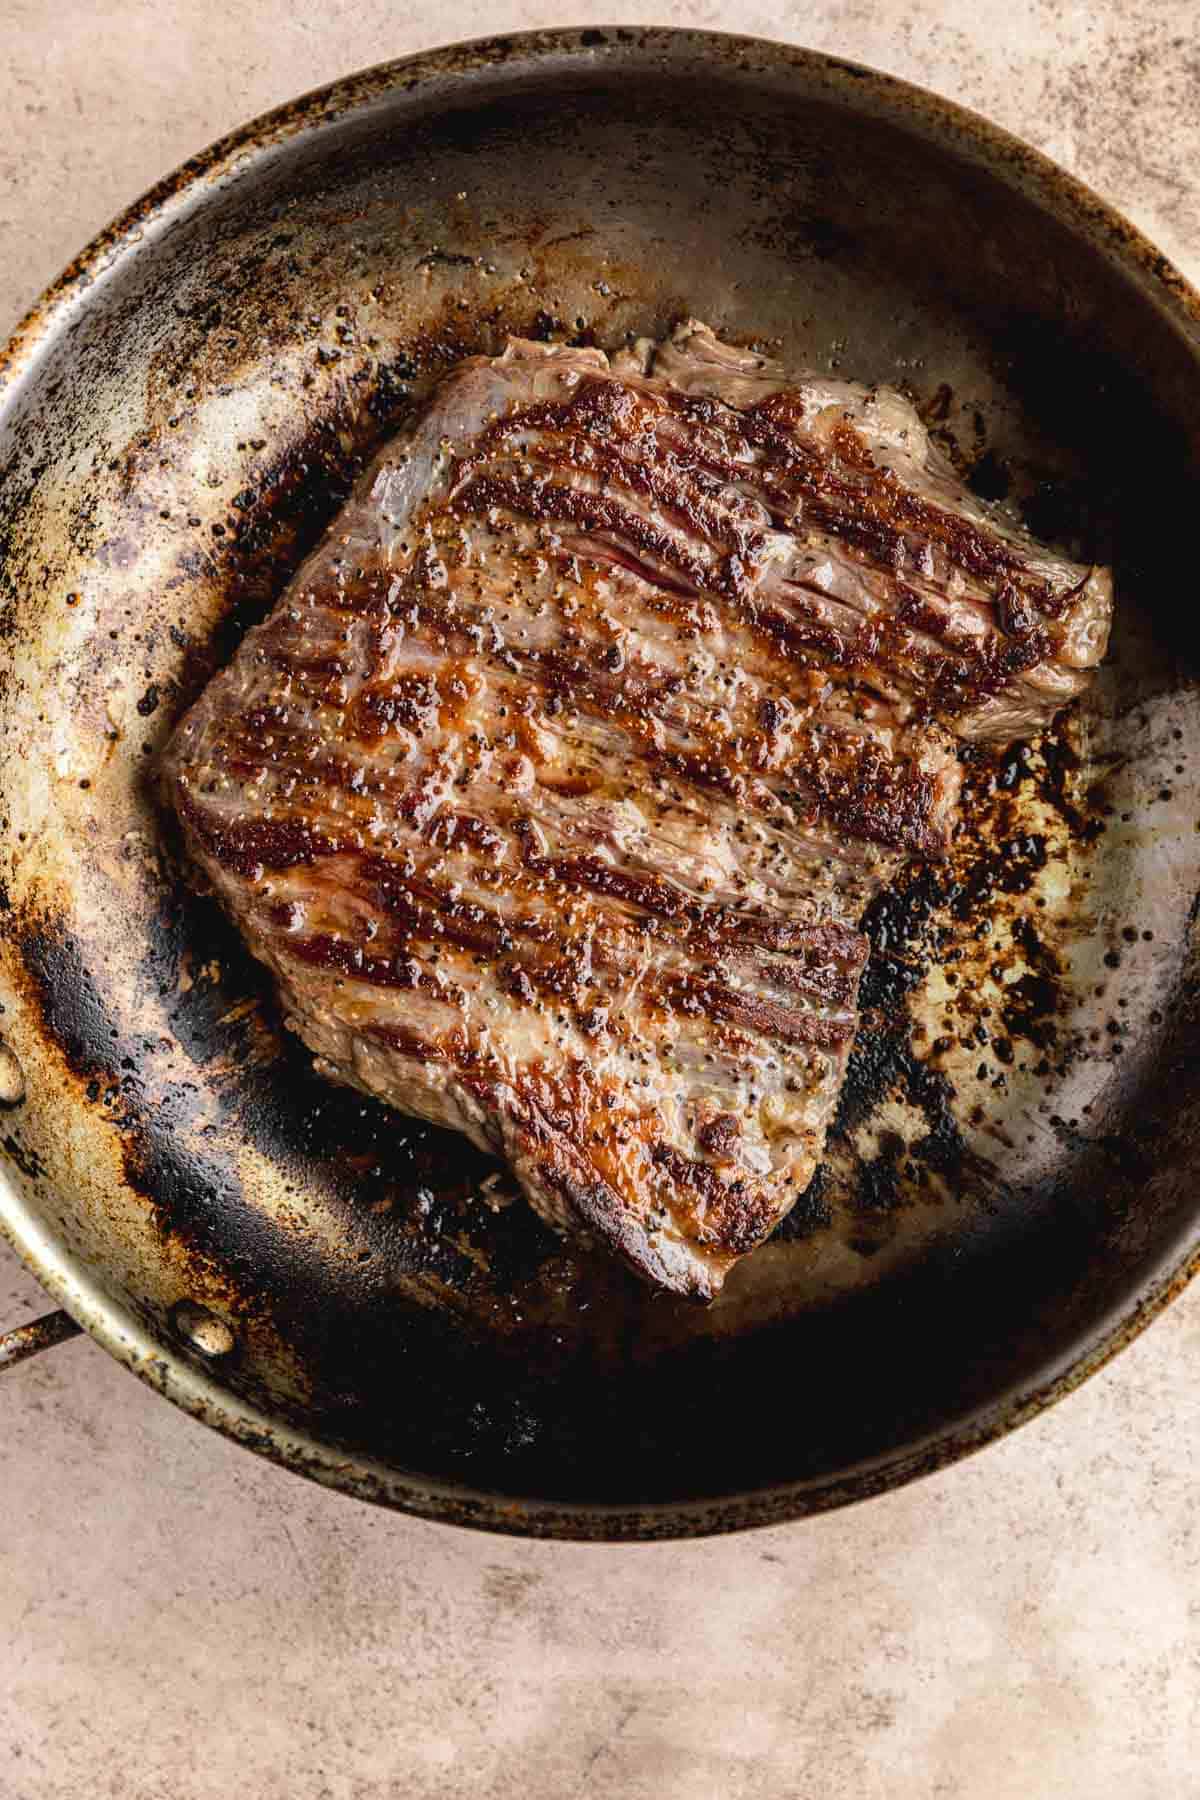 Pan seared steak in a pan. 